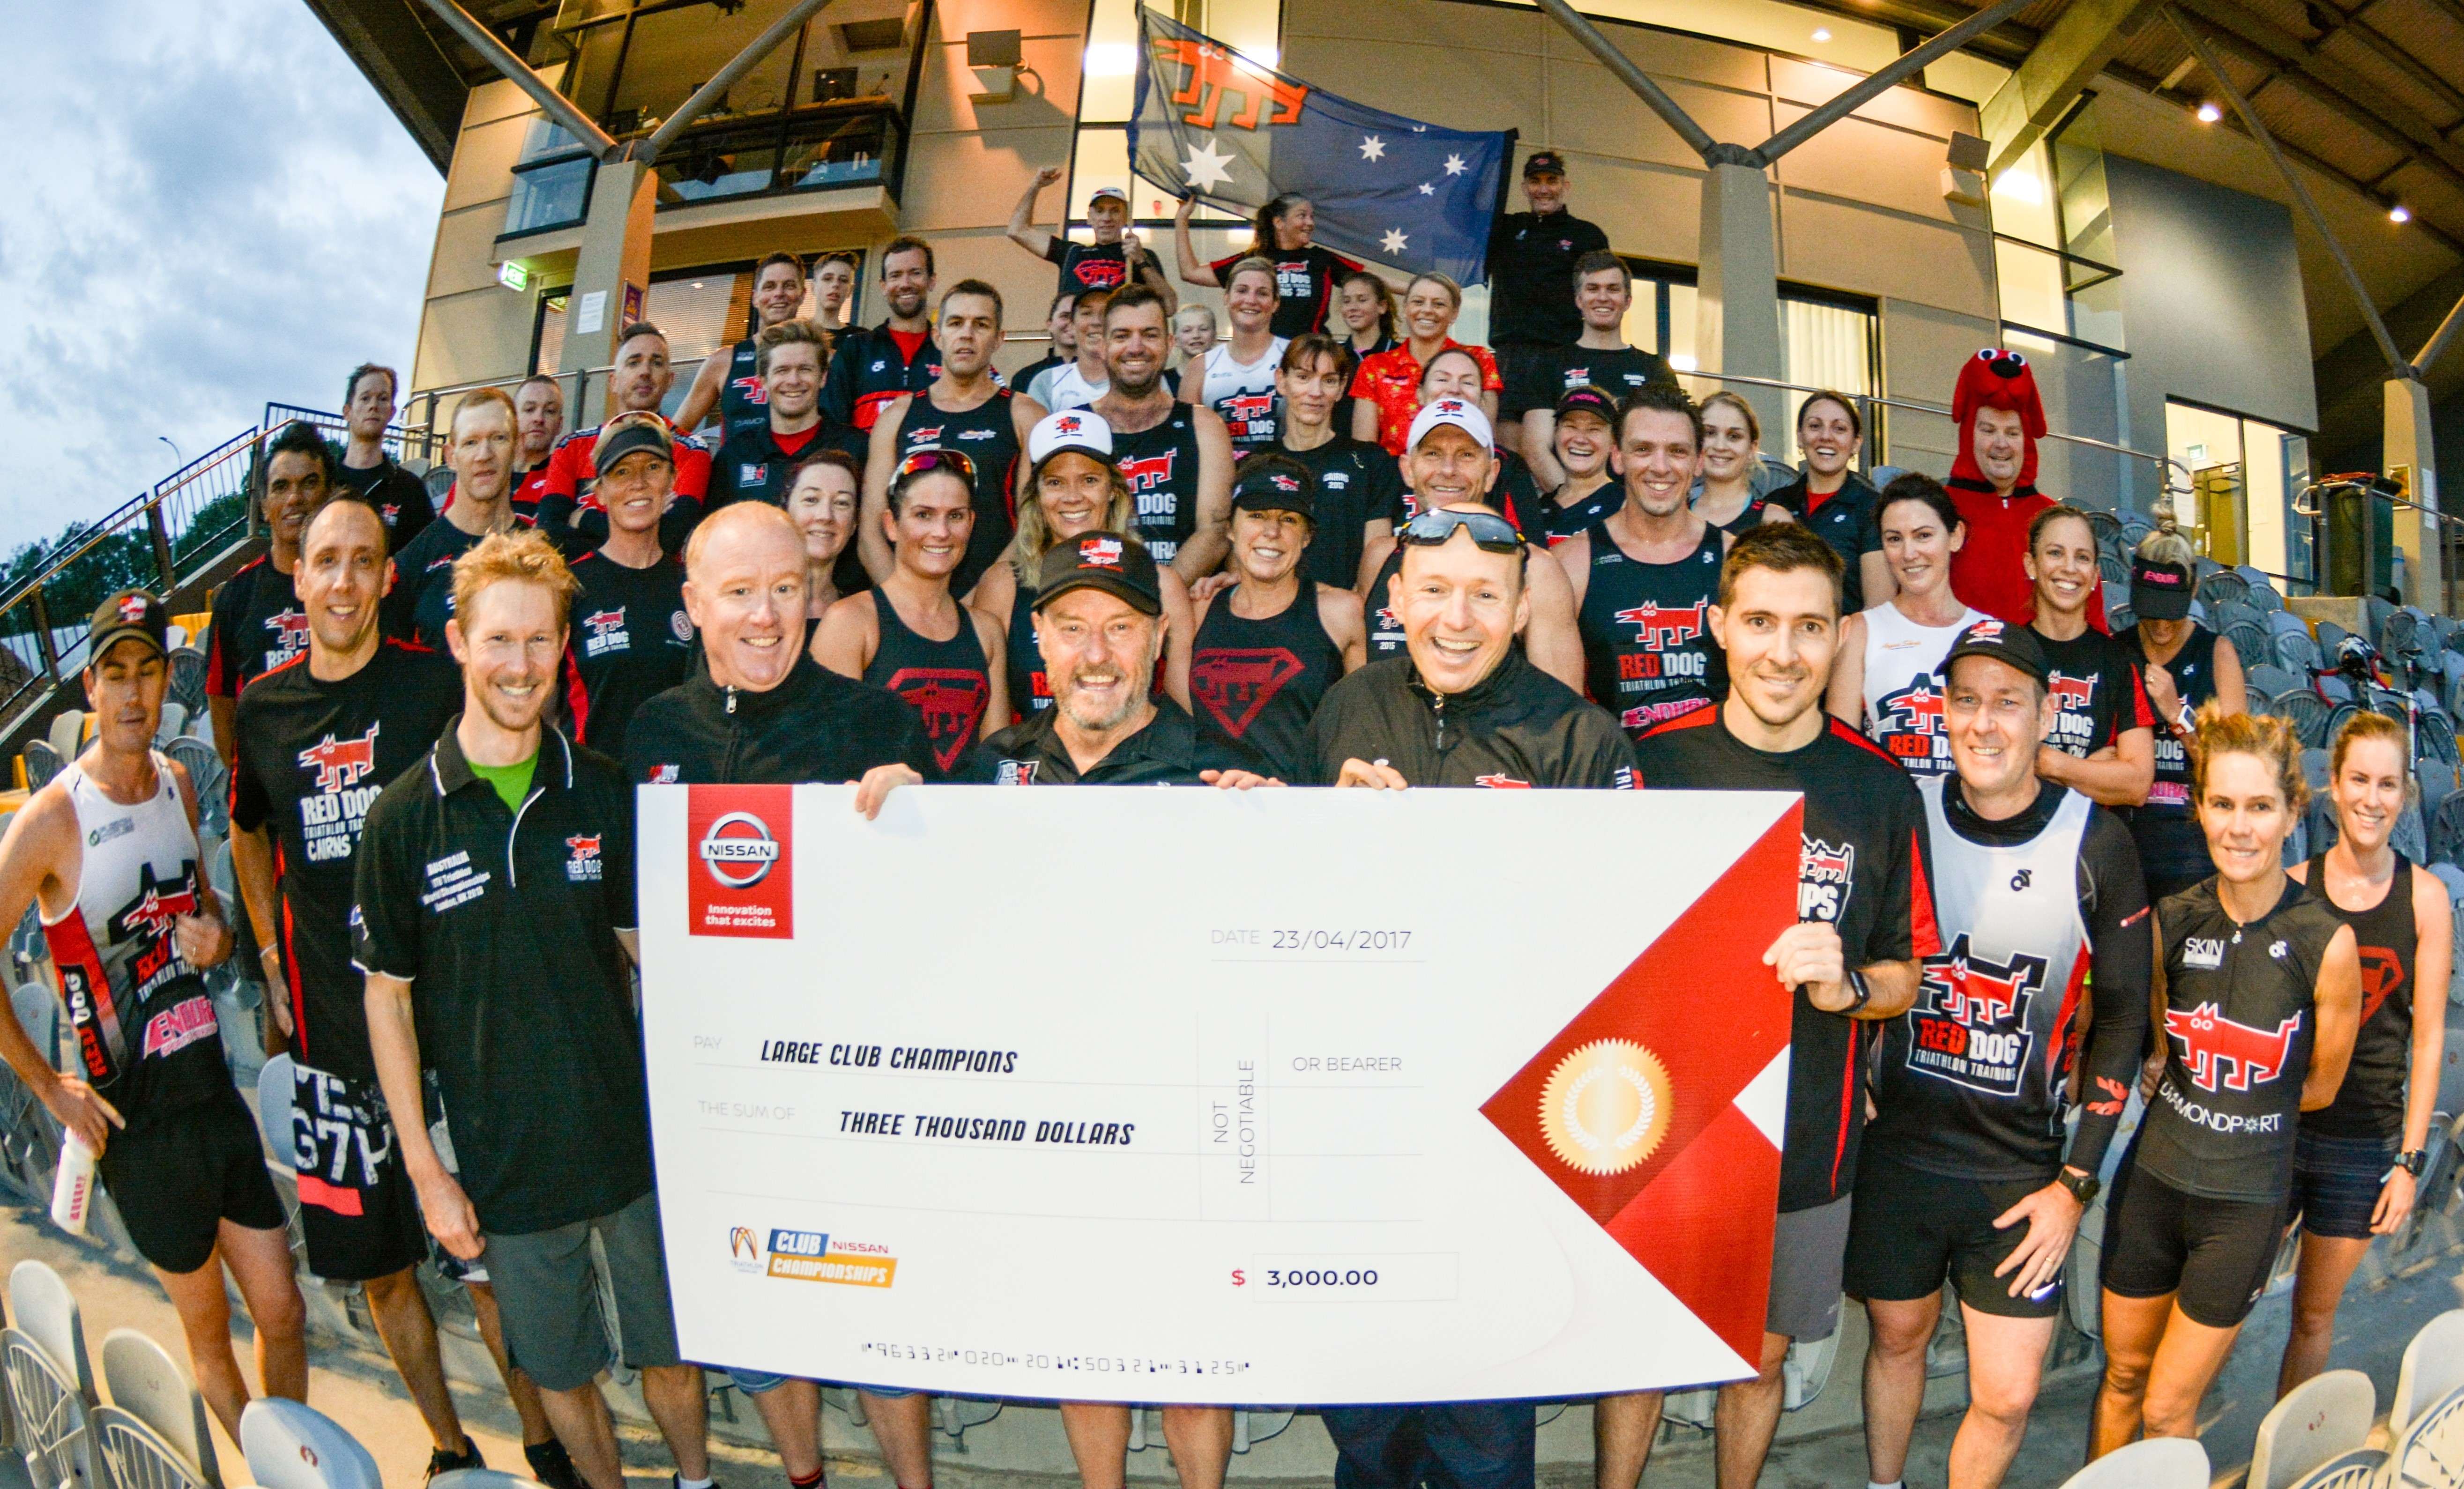 Trent Patten, the man behind Queensland’s largest Triathlon Club